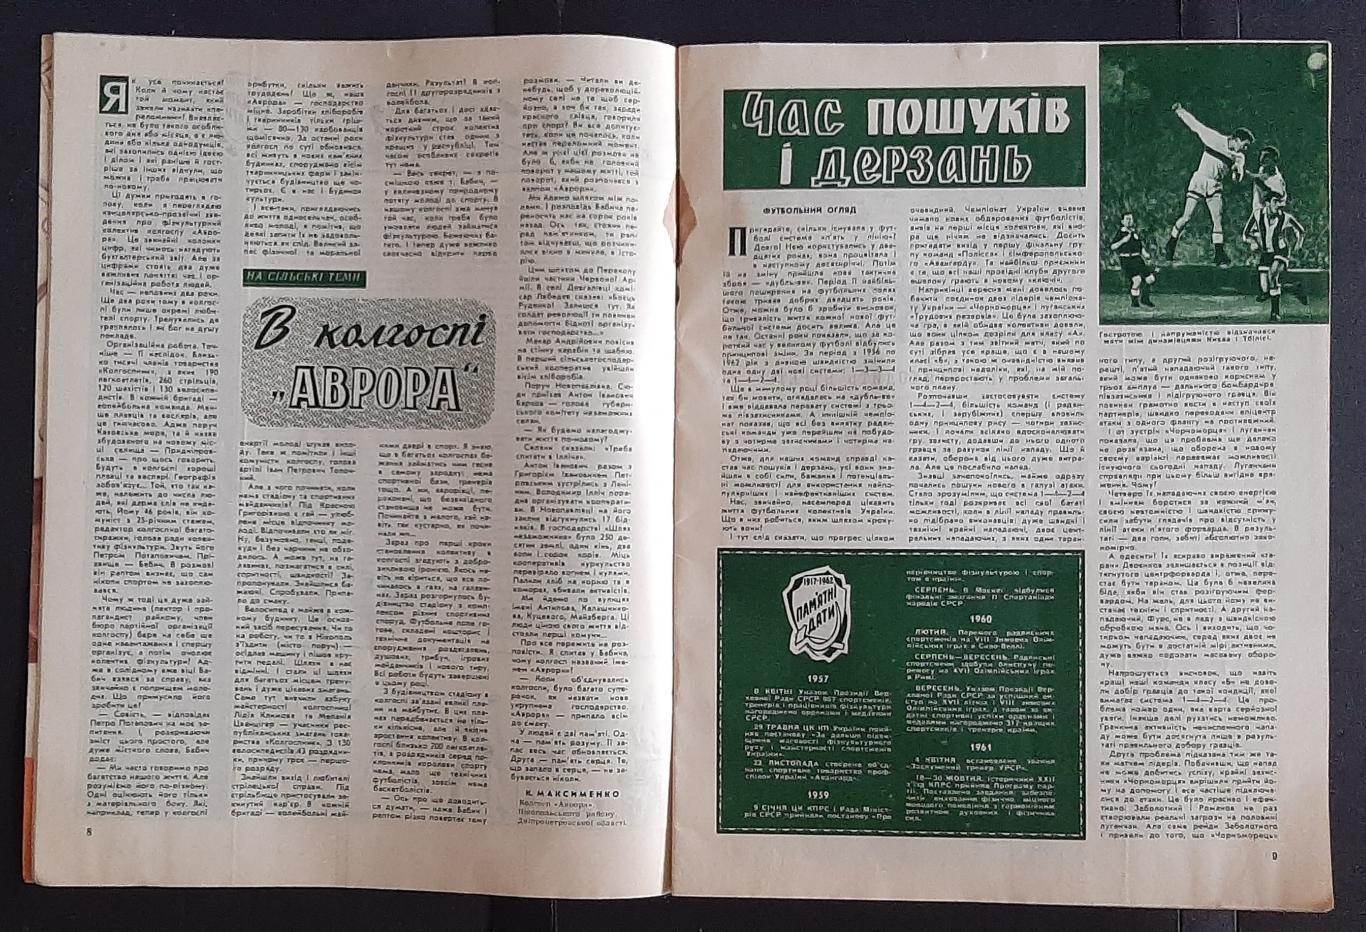 Журнал Фізкультура і спорт #11 1962 1